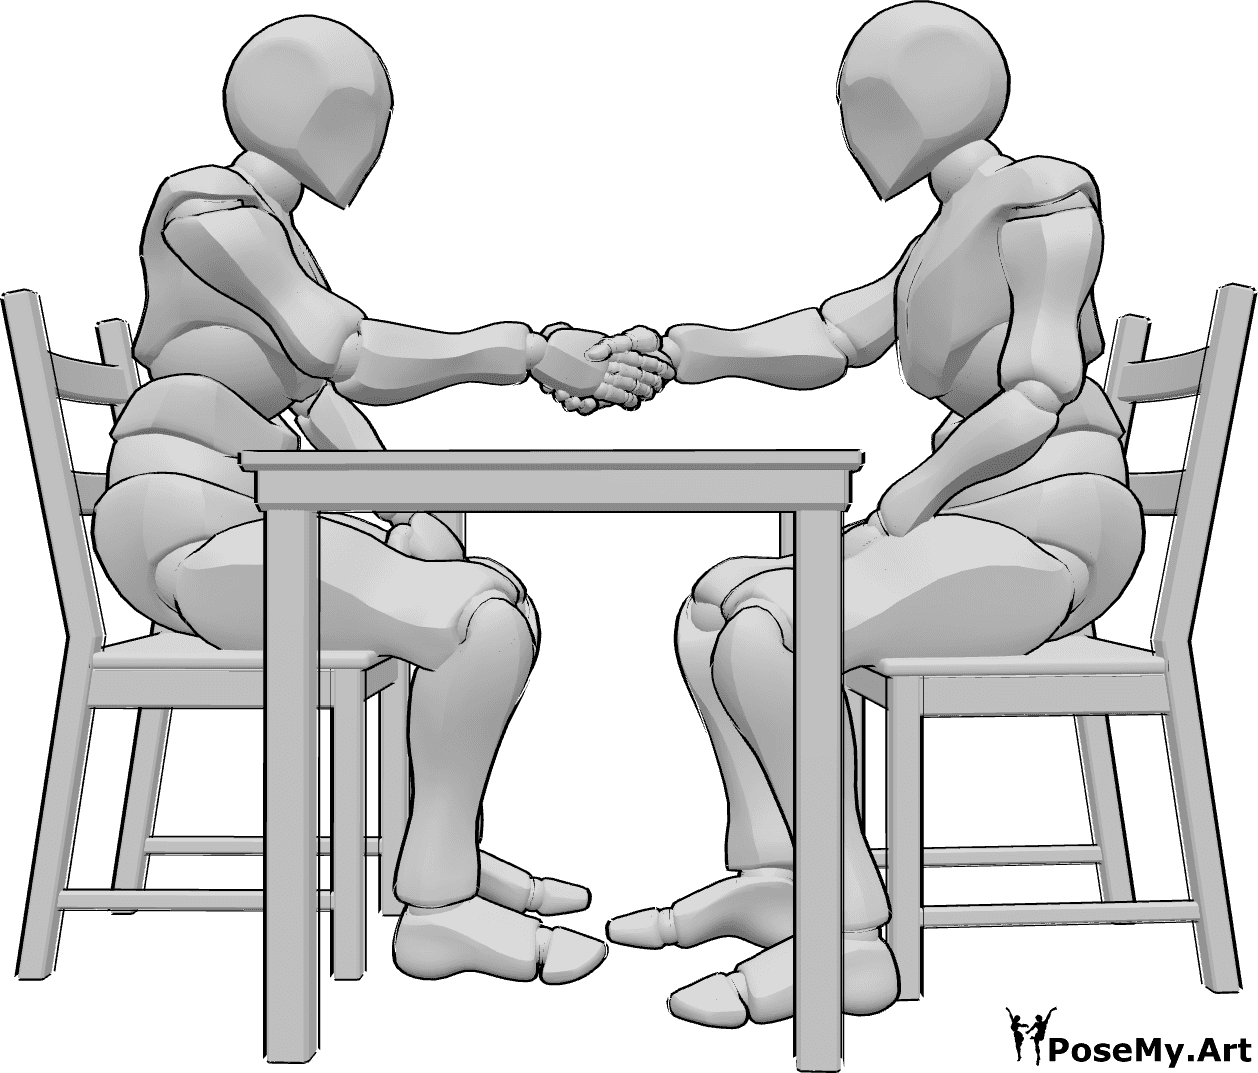 Riferimento alle pose- Uomo seduto in posa di stretta di mano - Due uomini sono seduti a un tavolo di fronte all'altro e si stringono la mano